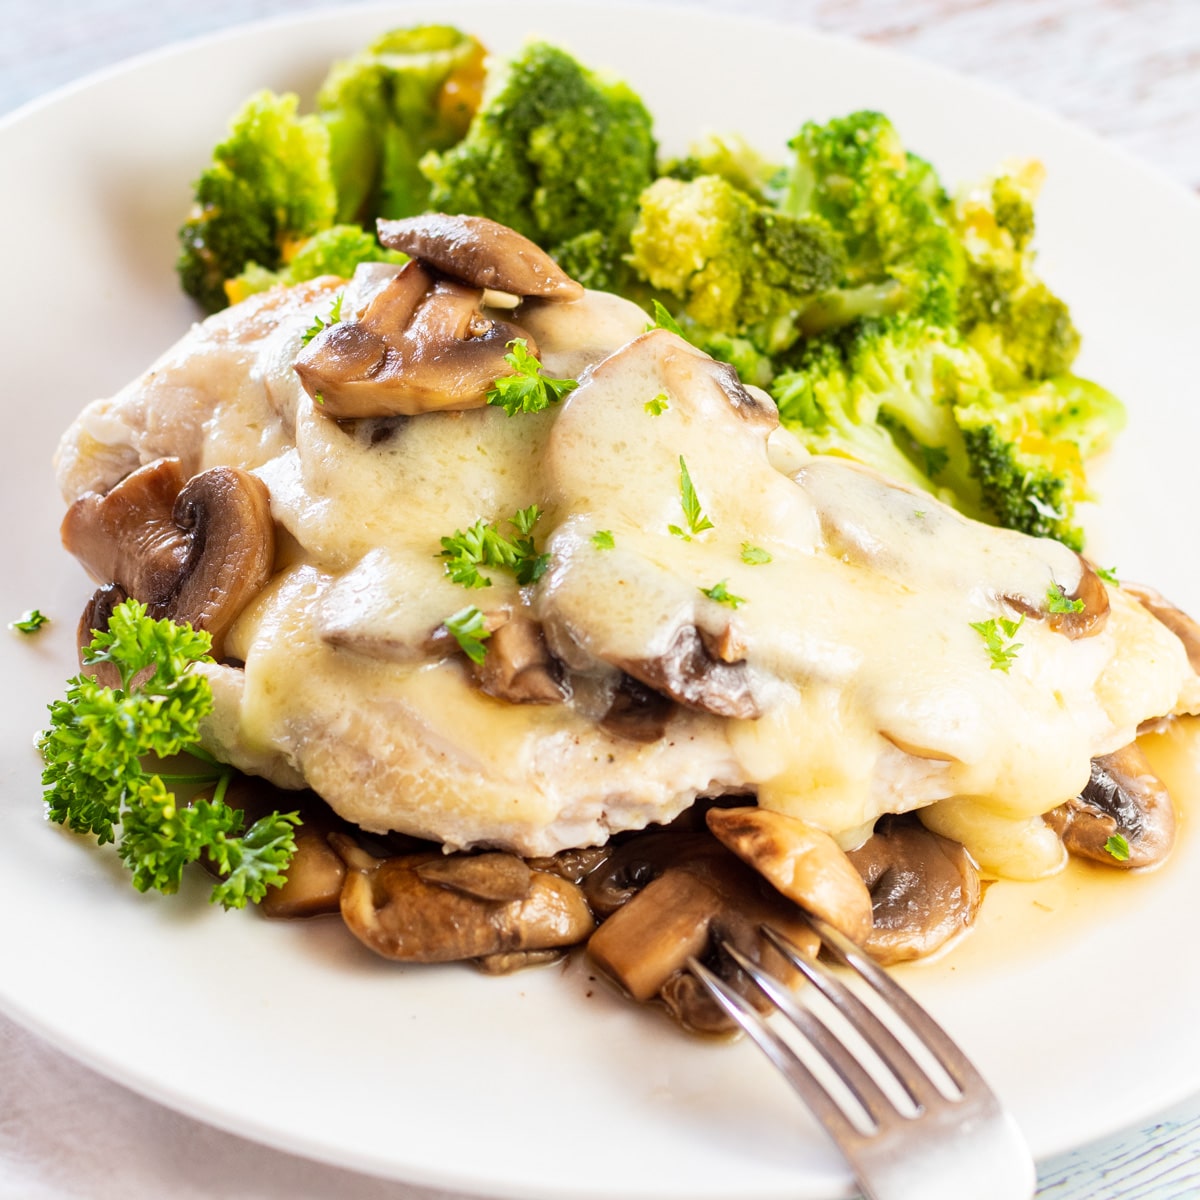 Křehké, chutné houbové švýcarské kuře se podává přes další restované houby na bílém talíři.